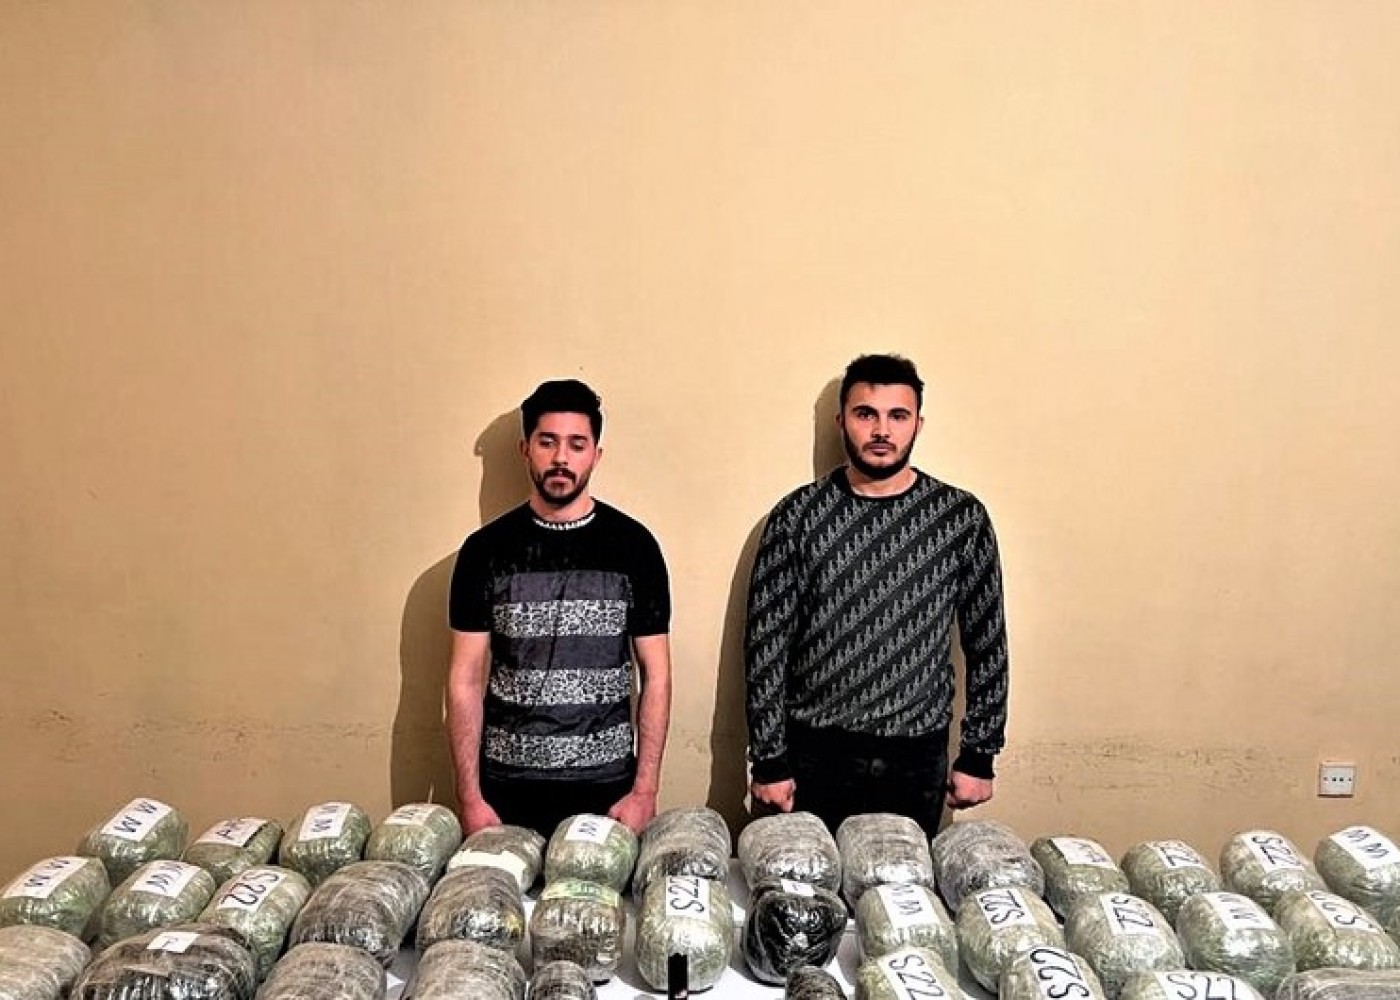 İrandan Azərbaycana narkotik keçirmək istədilər - FOTO